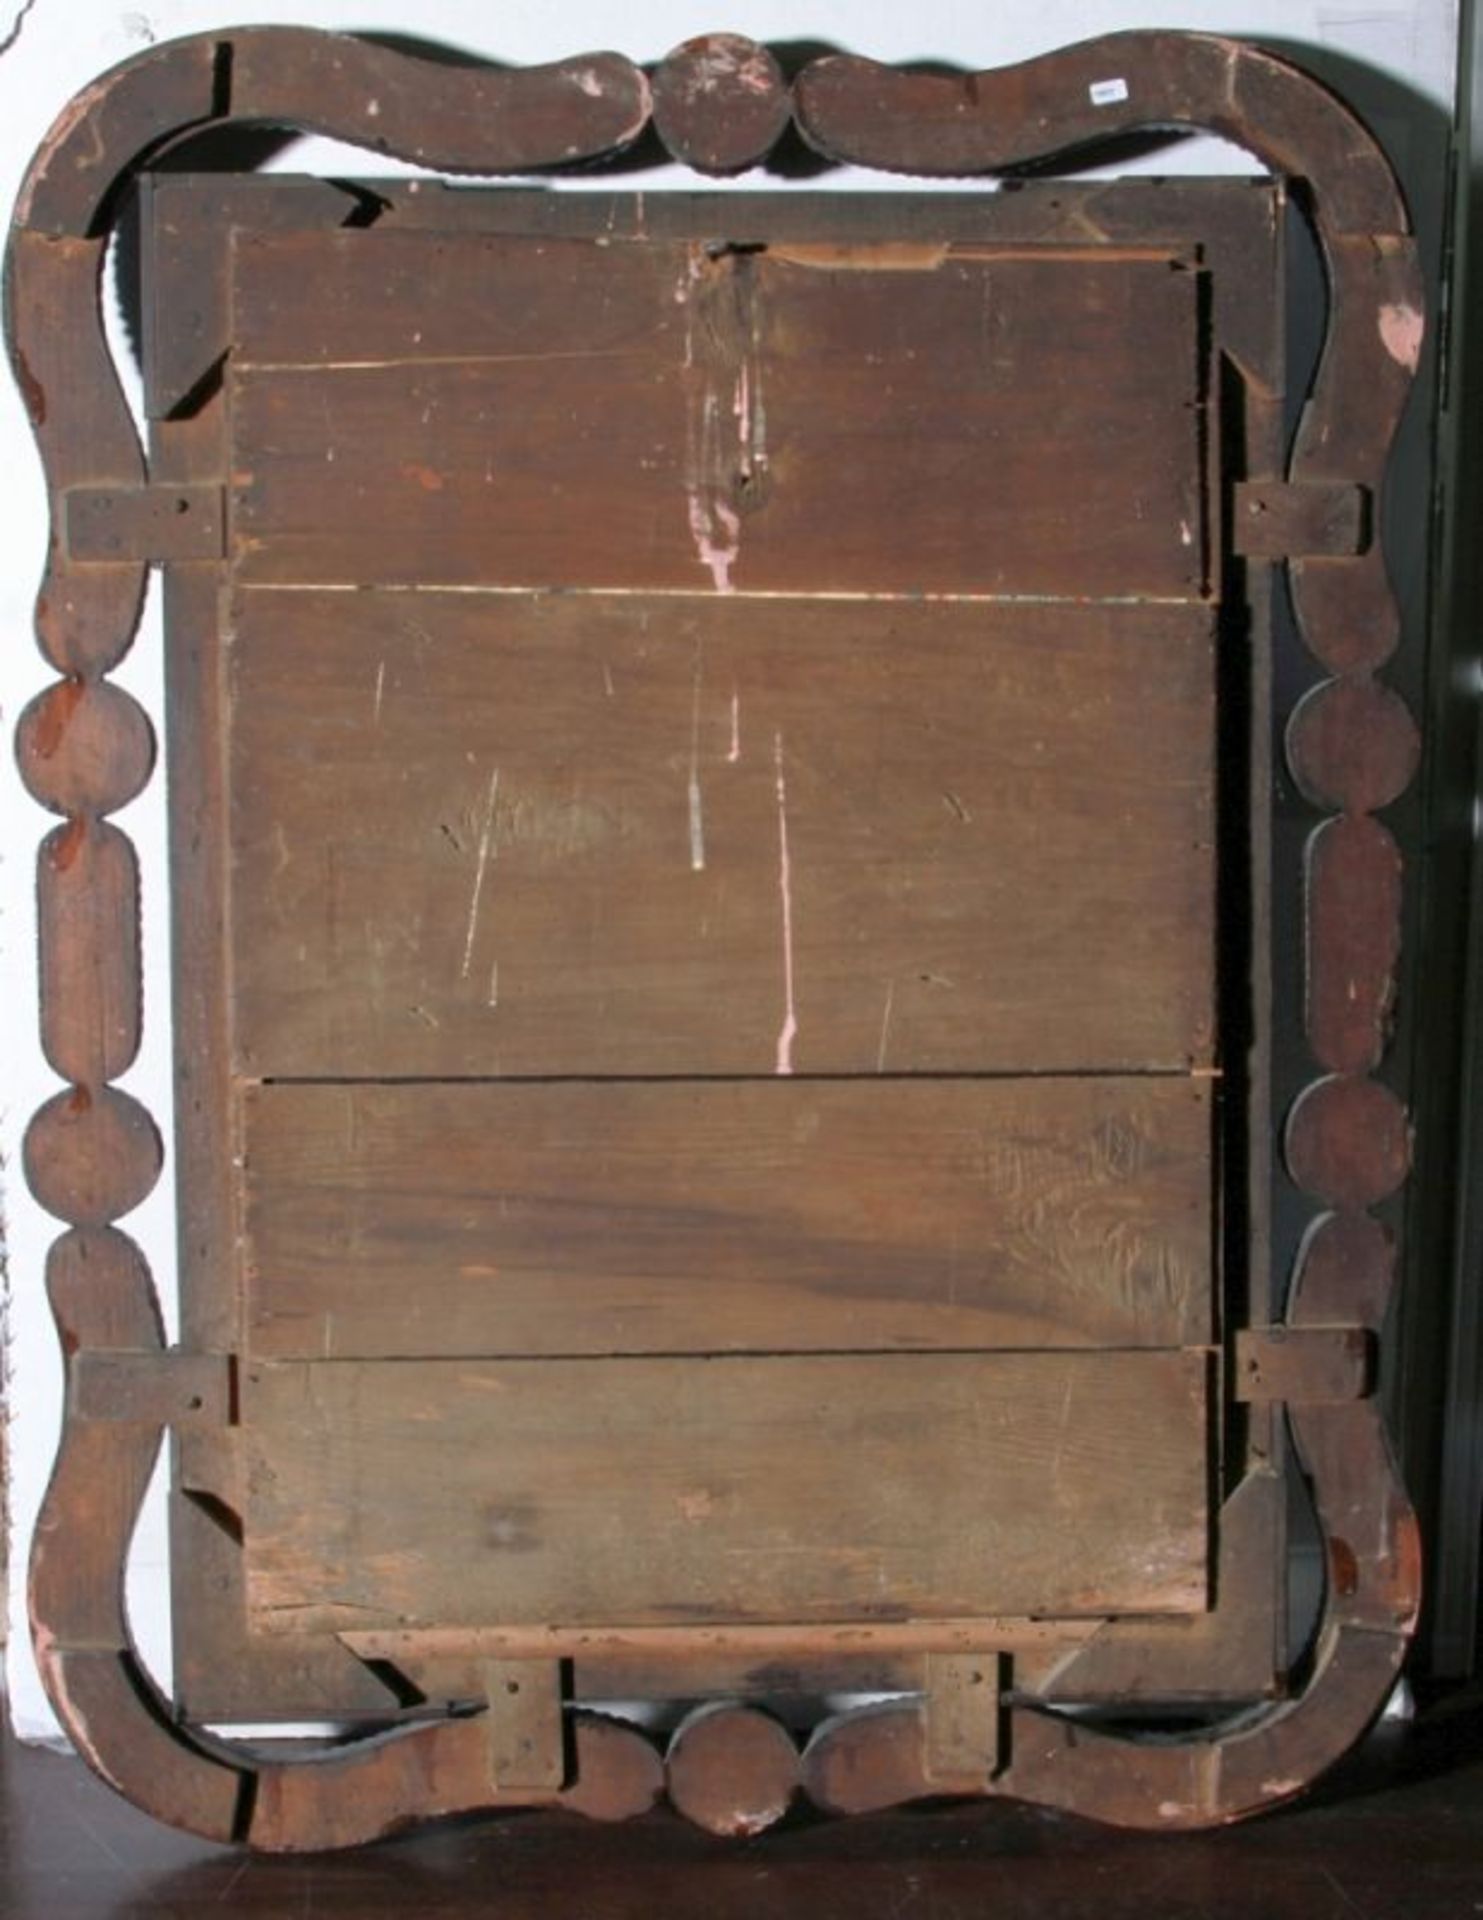 Wandspiegel, 19./20. Jh., Holz, dunkel gebeizt, Wandung rundum verziert mit Perlstabdekor,92 x - Bild 2 aus 2